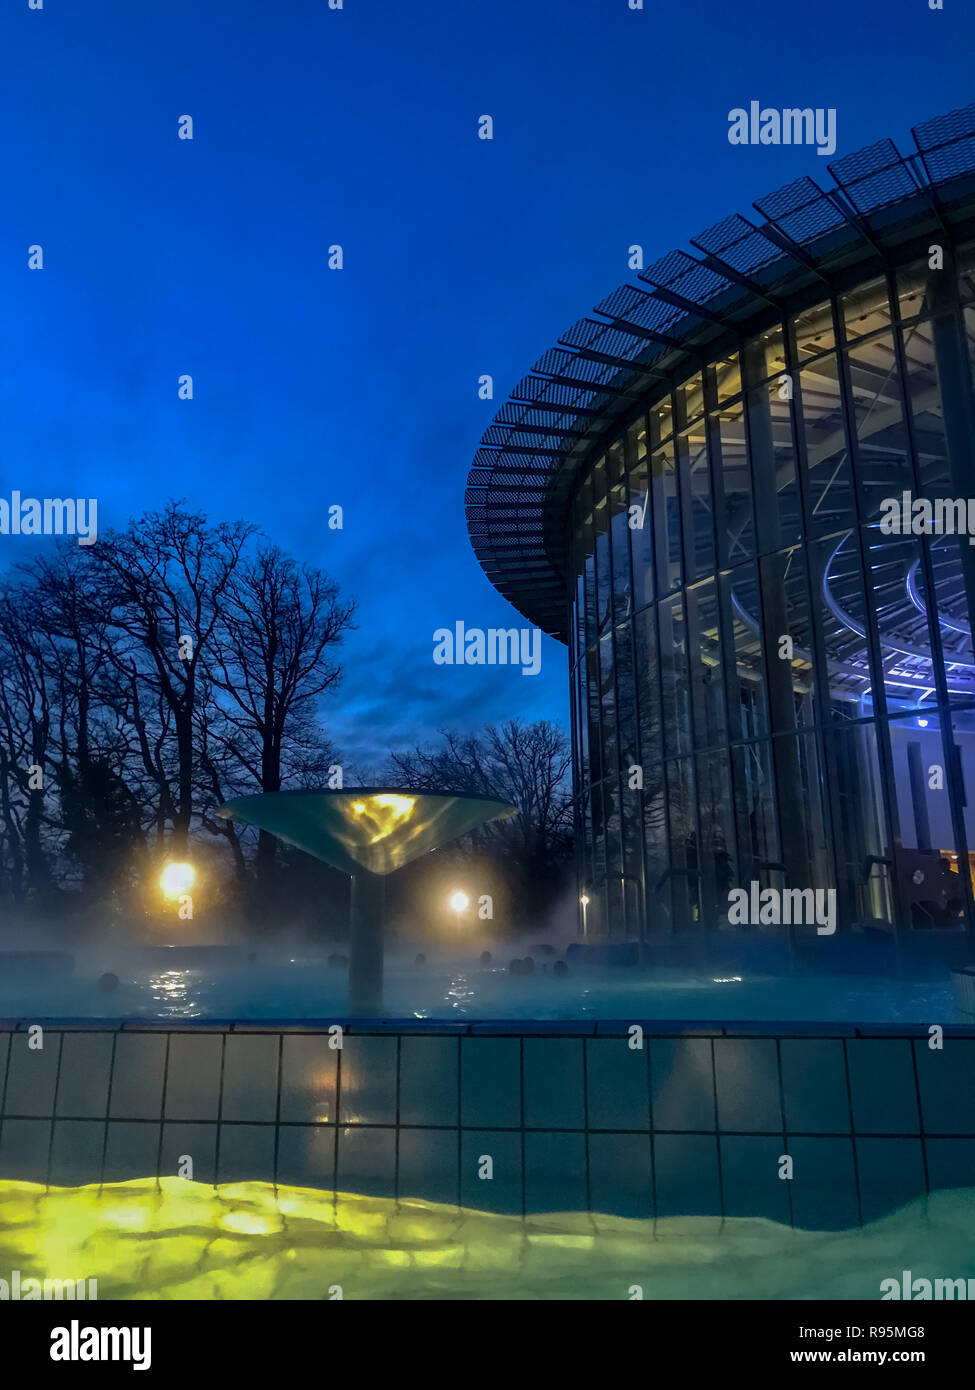 Dicembre 2018 - Spa, Belgio: piscina all'aperto del Les Thermes de Spa, il principale complesso termale della città Spa, durante le ore di colore blu. Foto Stock